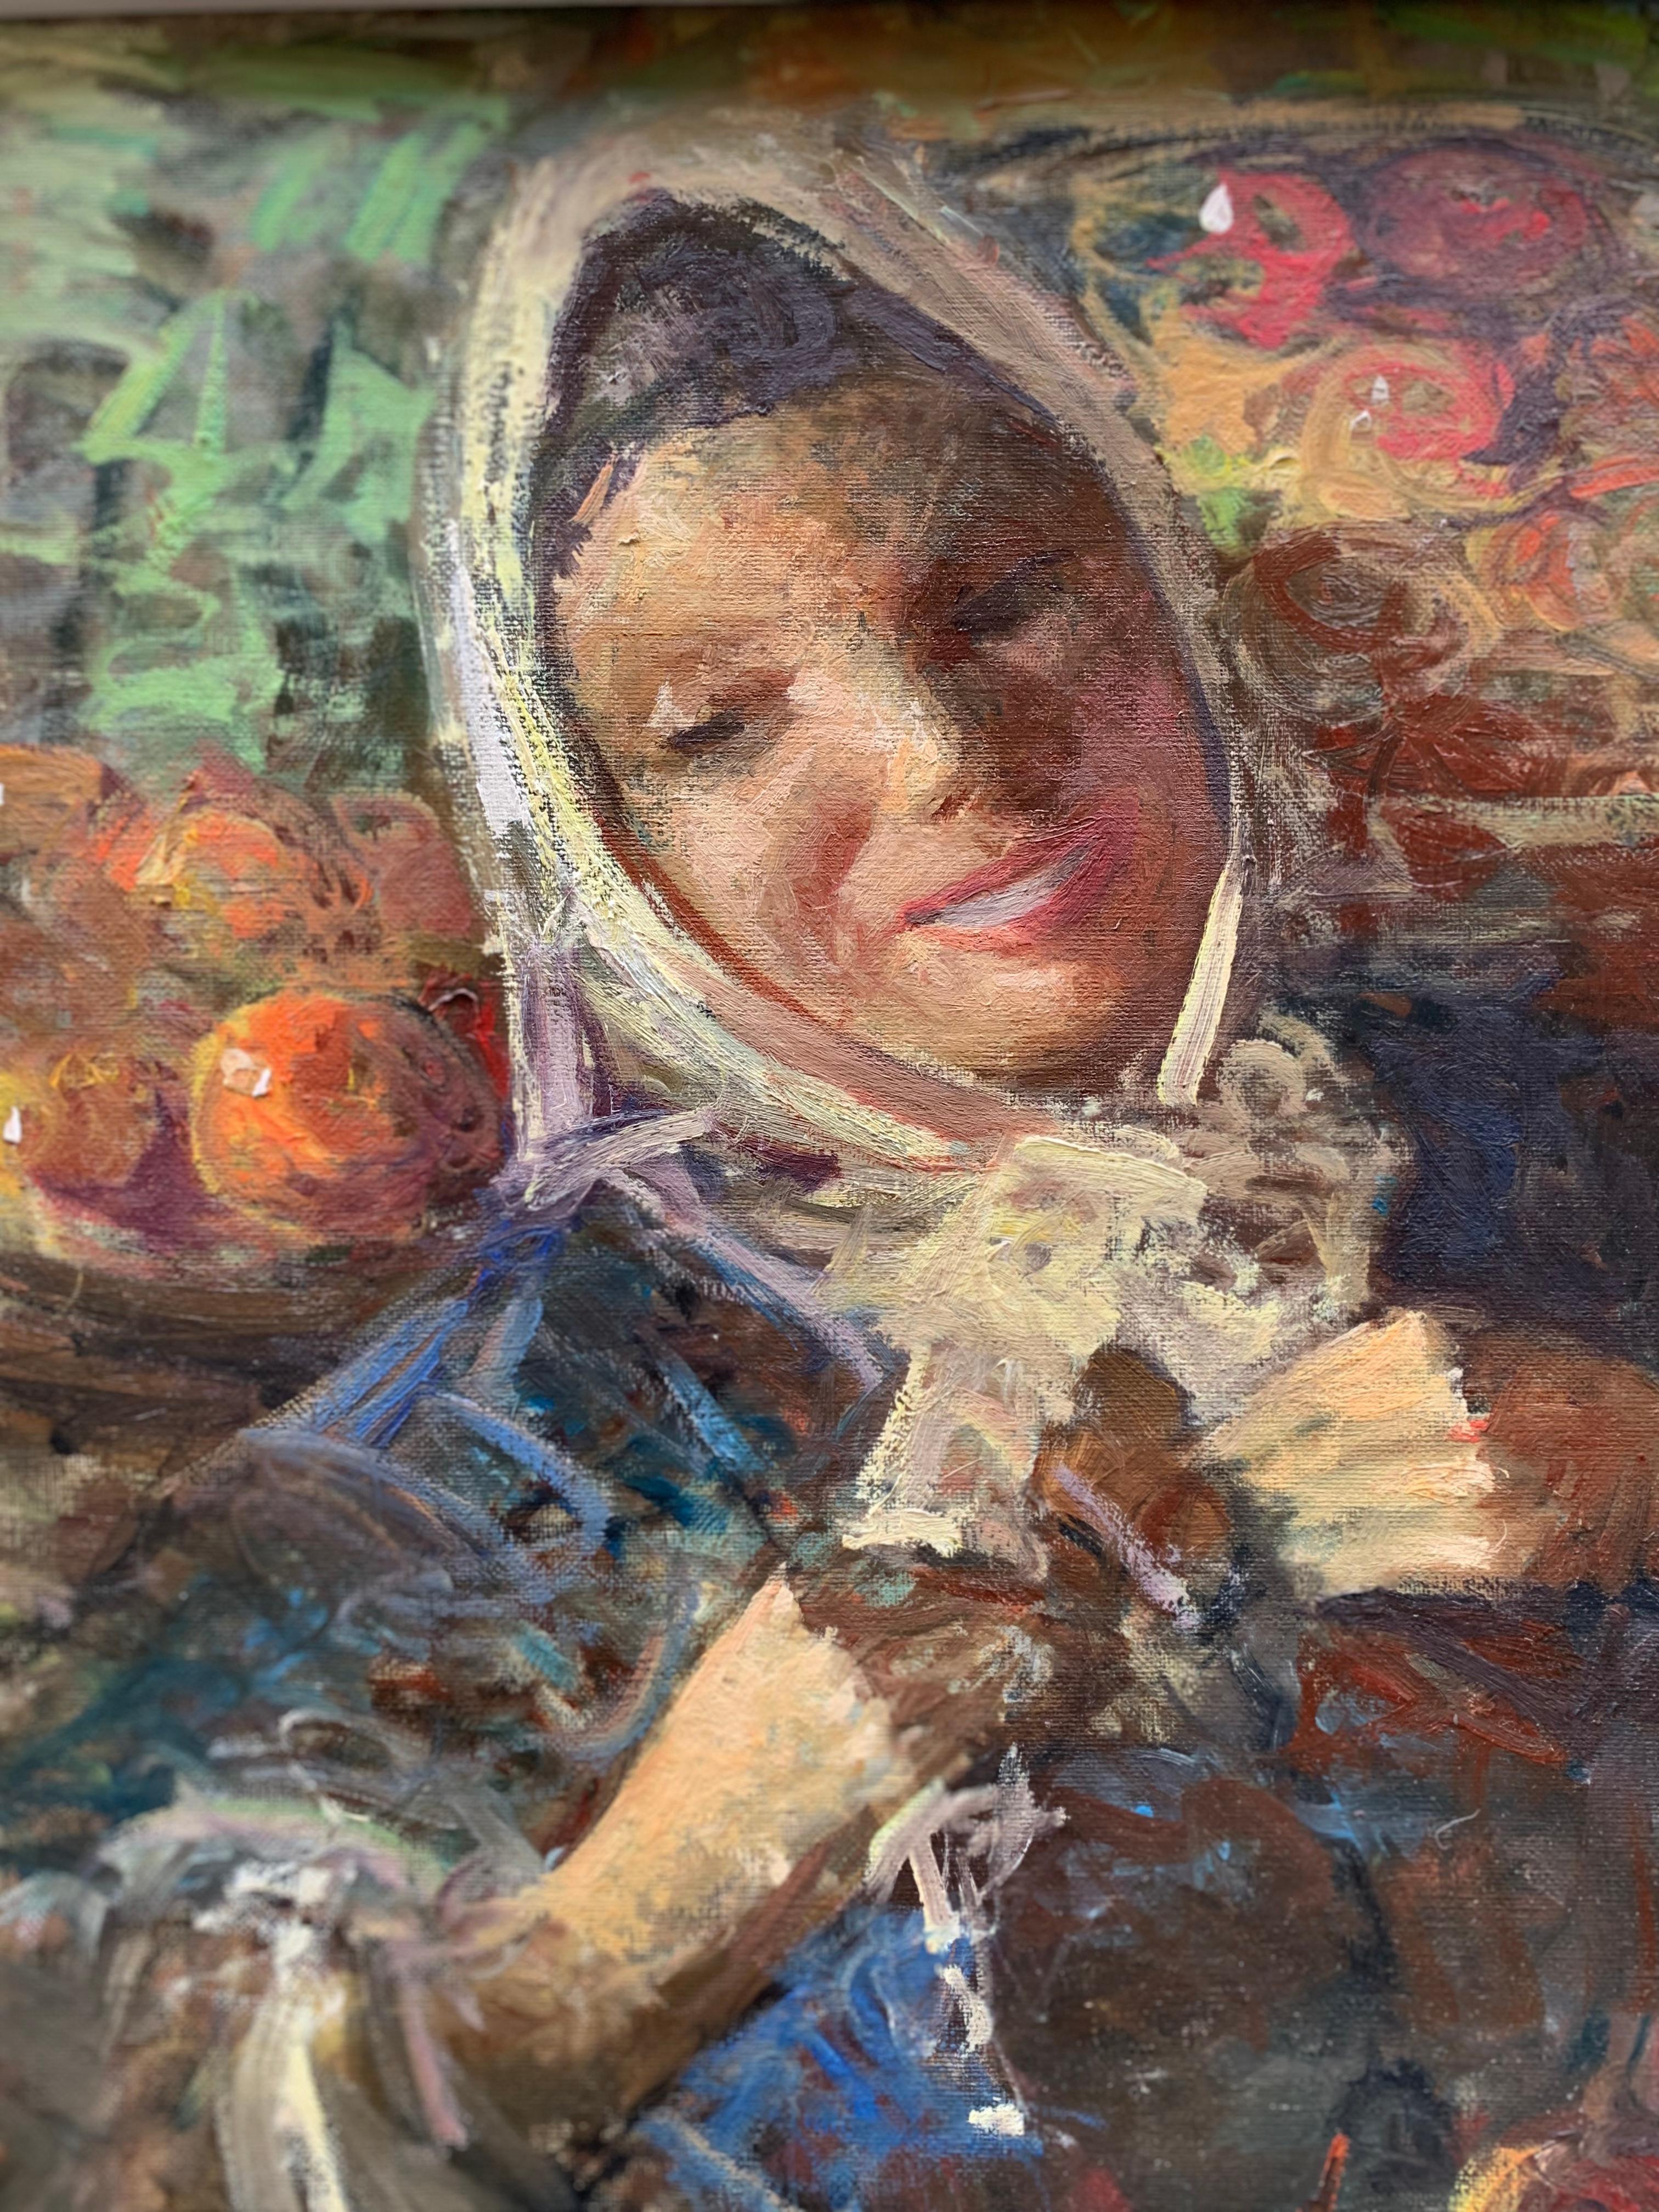 Girl with fruit Le marché. Année 1958. Signé Sergio Cirno Bissi (Carmignano, 1902 - Florence, 1987).
Cette peinture très colorée et expressive est l'œuvre du peintre toscan, actif à Florence. L'auteur du tableau capture l'expression d'une jeune